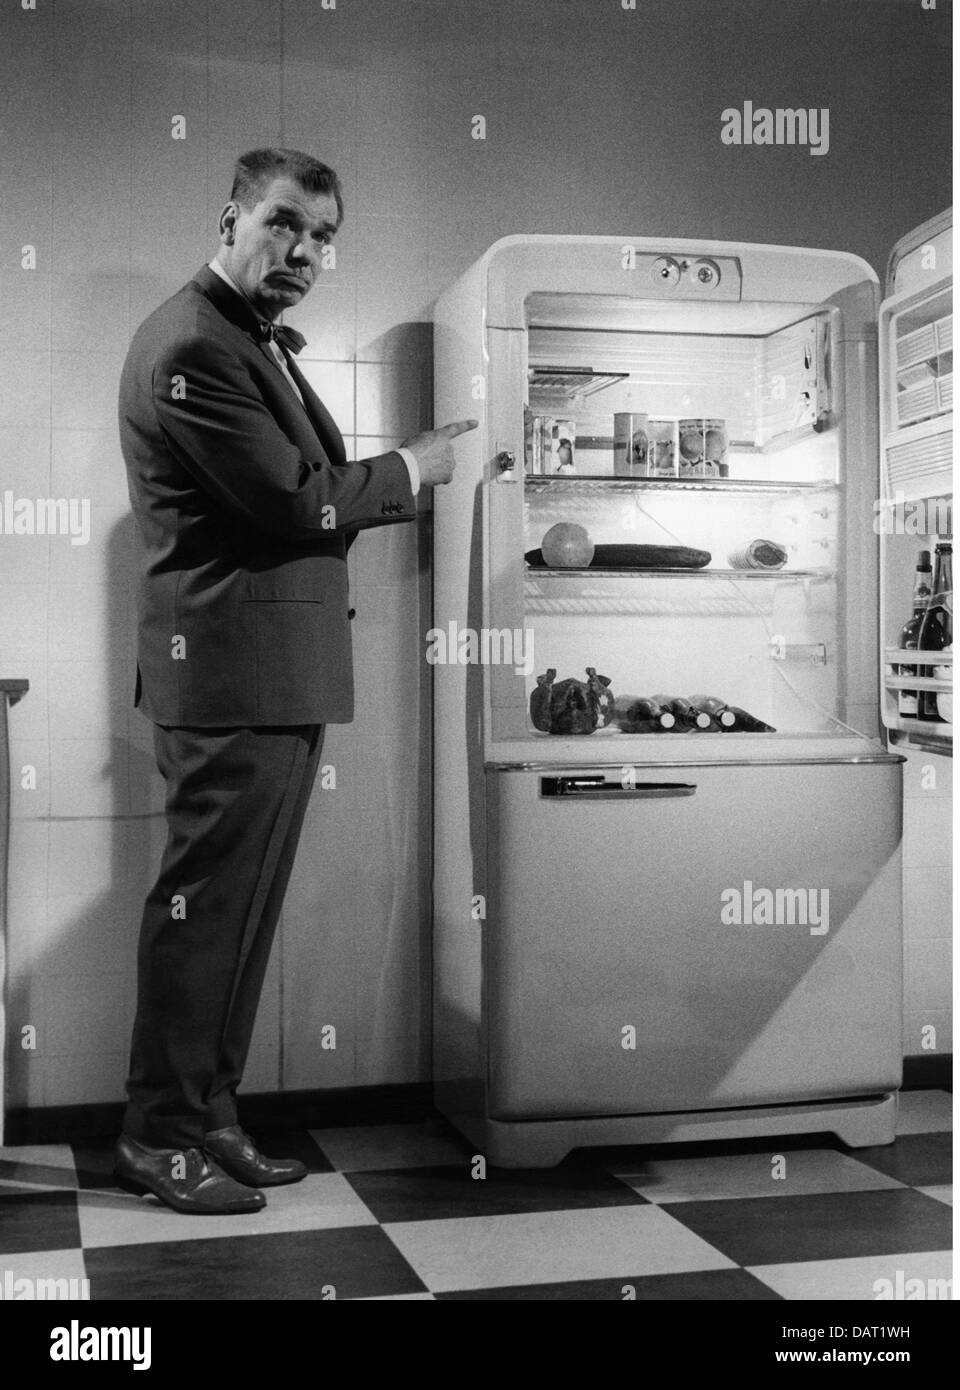 Maison, cuisine et ustensiles de cuisine, réfrigérateur, homme impressionné pointant vers réfrigérateur ouvert avec contenu, années 1950, droits supplémentaires-Clearences-non disponible Banque D'Images